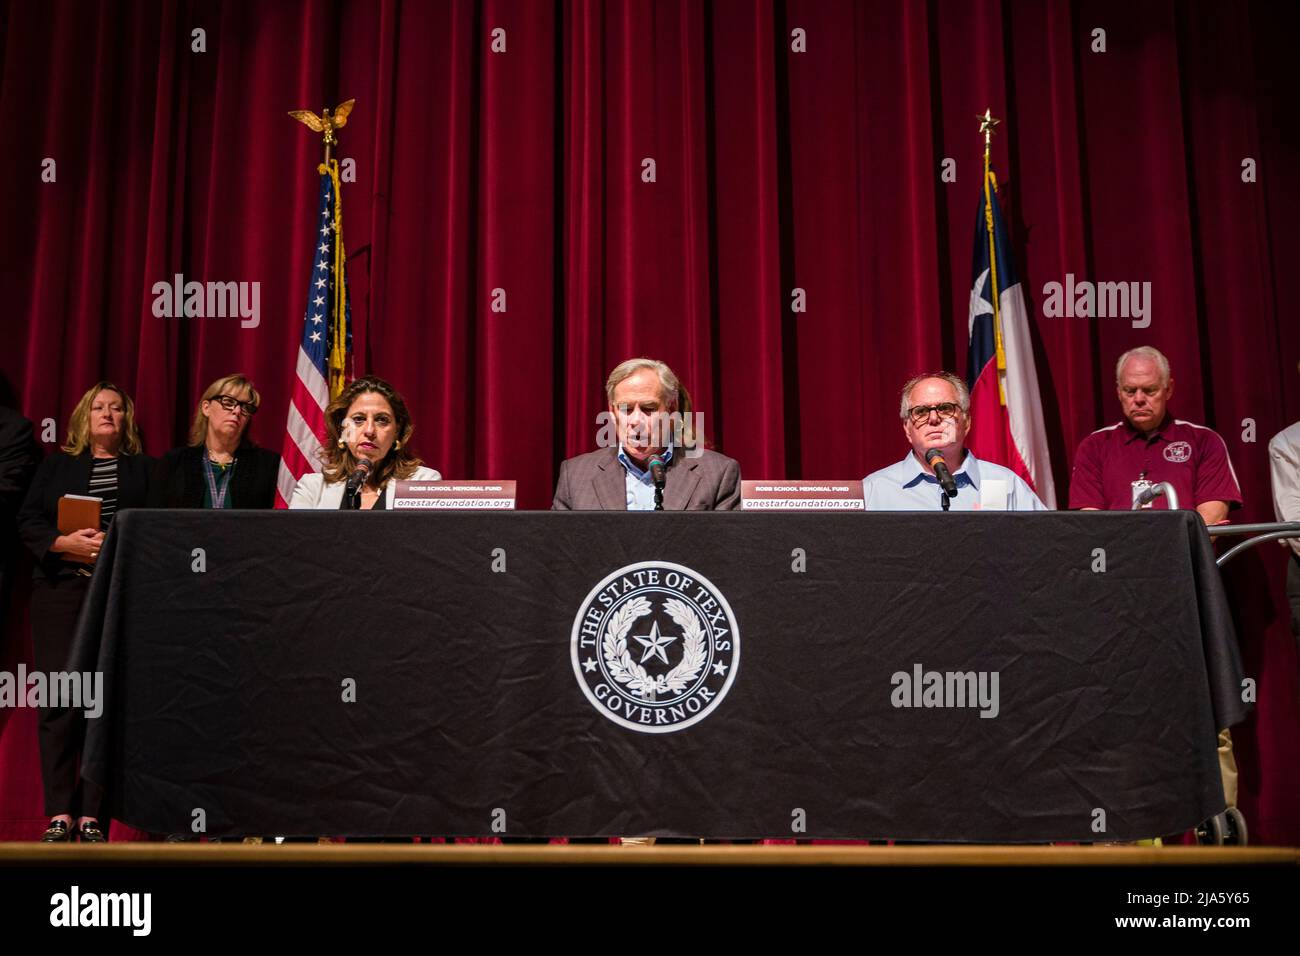 27 mai 2022 : le gouverneur du Texas Greg Abbott (au centre), le maire d'Uvalde Don McLaughlin (à droite) et le procureur de district du comté d'Uvalde Mitchell Busbee (à gauche) parlent à l'Uvalde High School, à Uvalde, au Texas, le vendredi 27 mai 2022, Lors d'une conférence de presse sur le tournage de l'école élémentaire Robb. Un tireur de 18 ans armé de deux fusils de style AR-15 a tué 19 enfants et deux enseignants lors du massacre, le mardi 24 mai 2022; Abbott a révélé que les forces de l'ordre locales l'avaient induit en erreur sur la situation, ce qui l'avait amené à louer les actions des agents du service de police d'Uvalde qui il avait répondu, qui se sont tenus au sch Banque D'Images